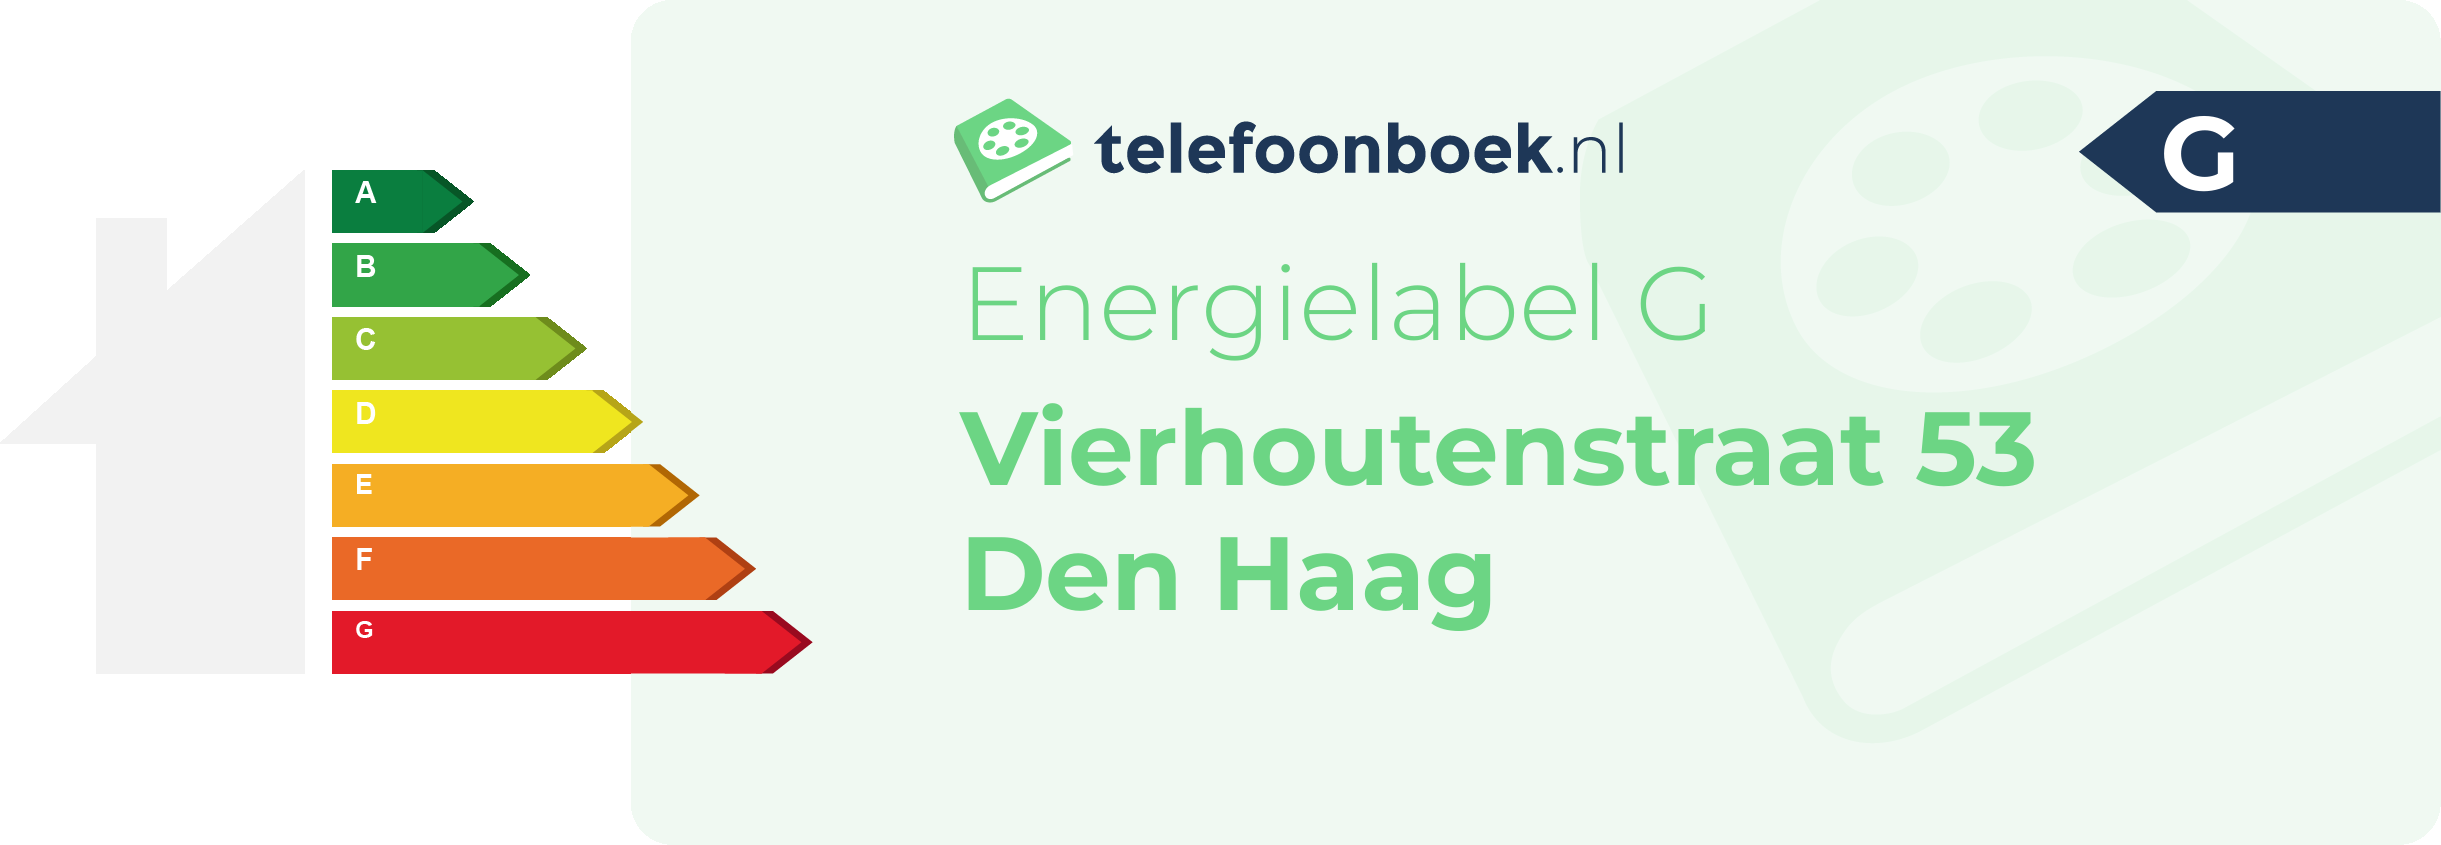 Energielabel Vierhoutenstraat 53 Den Haag